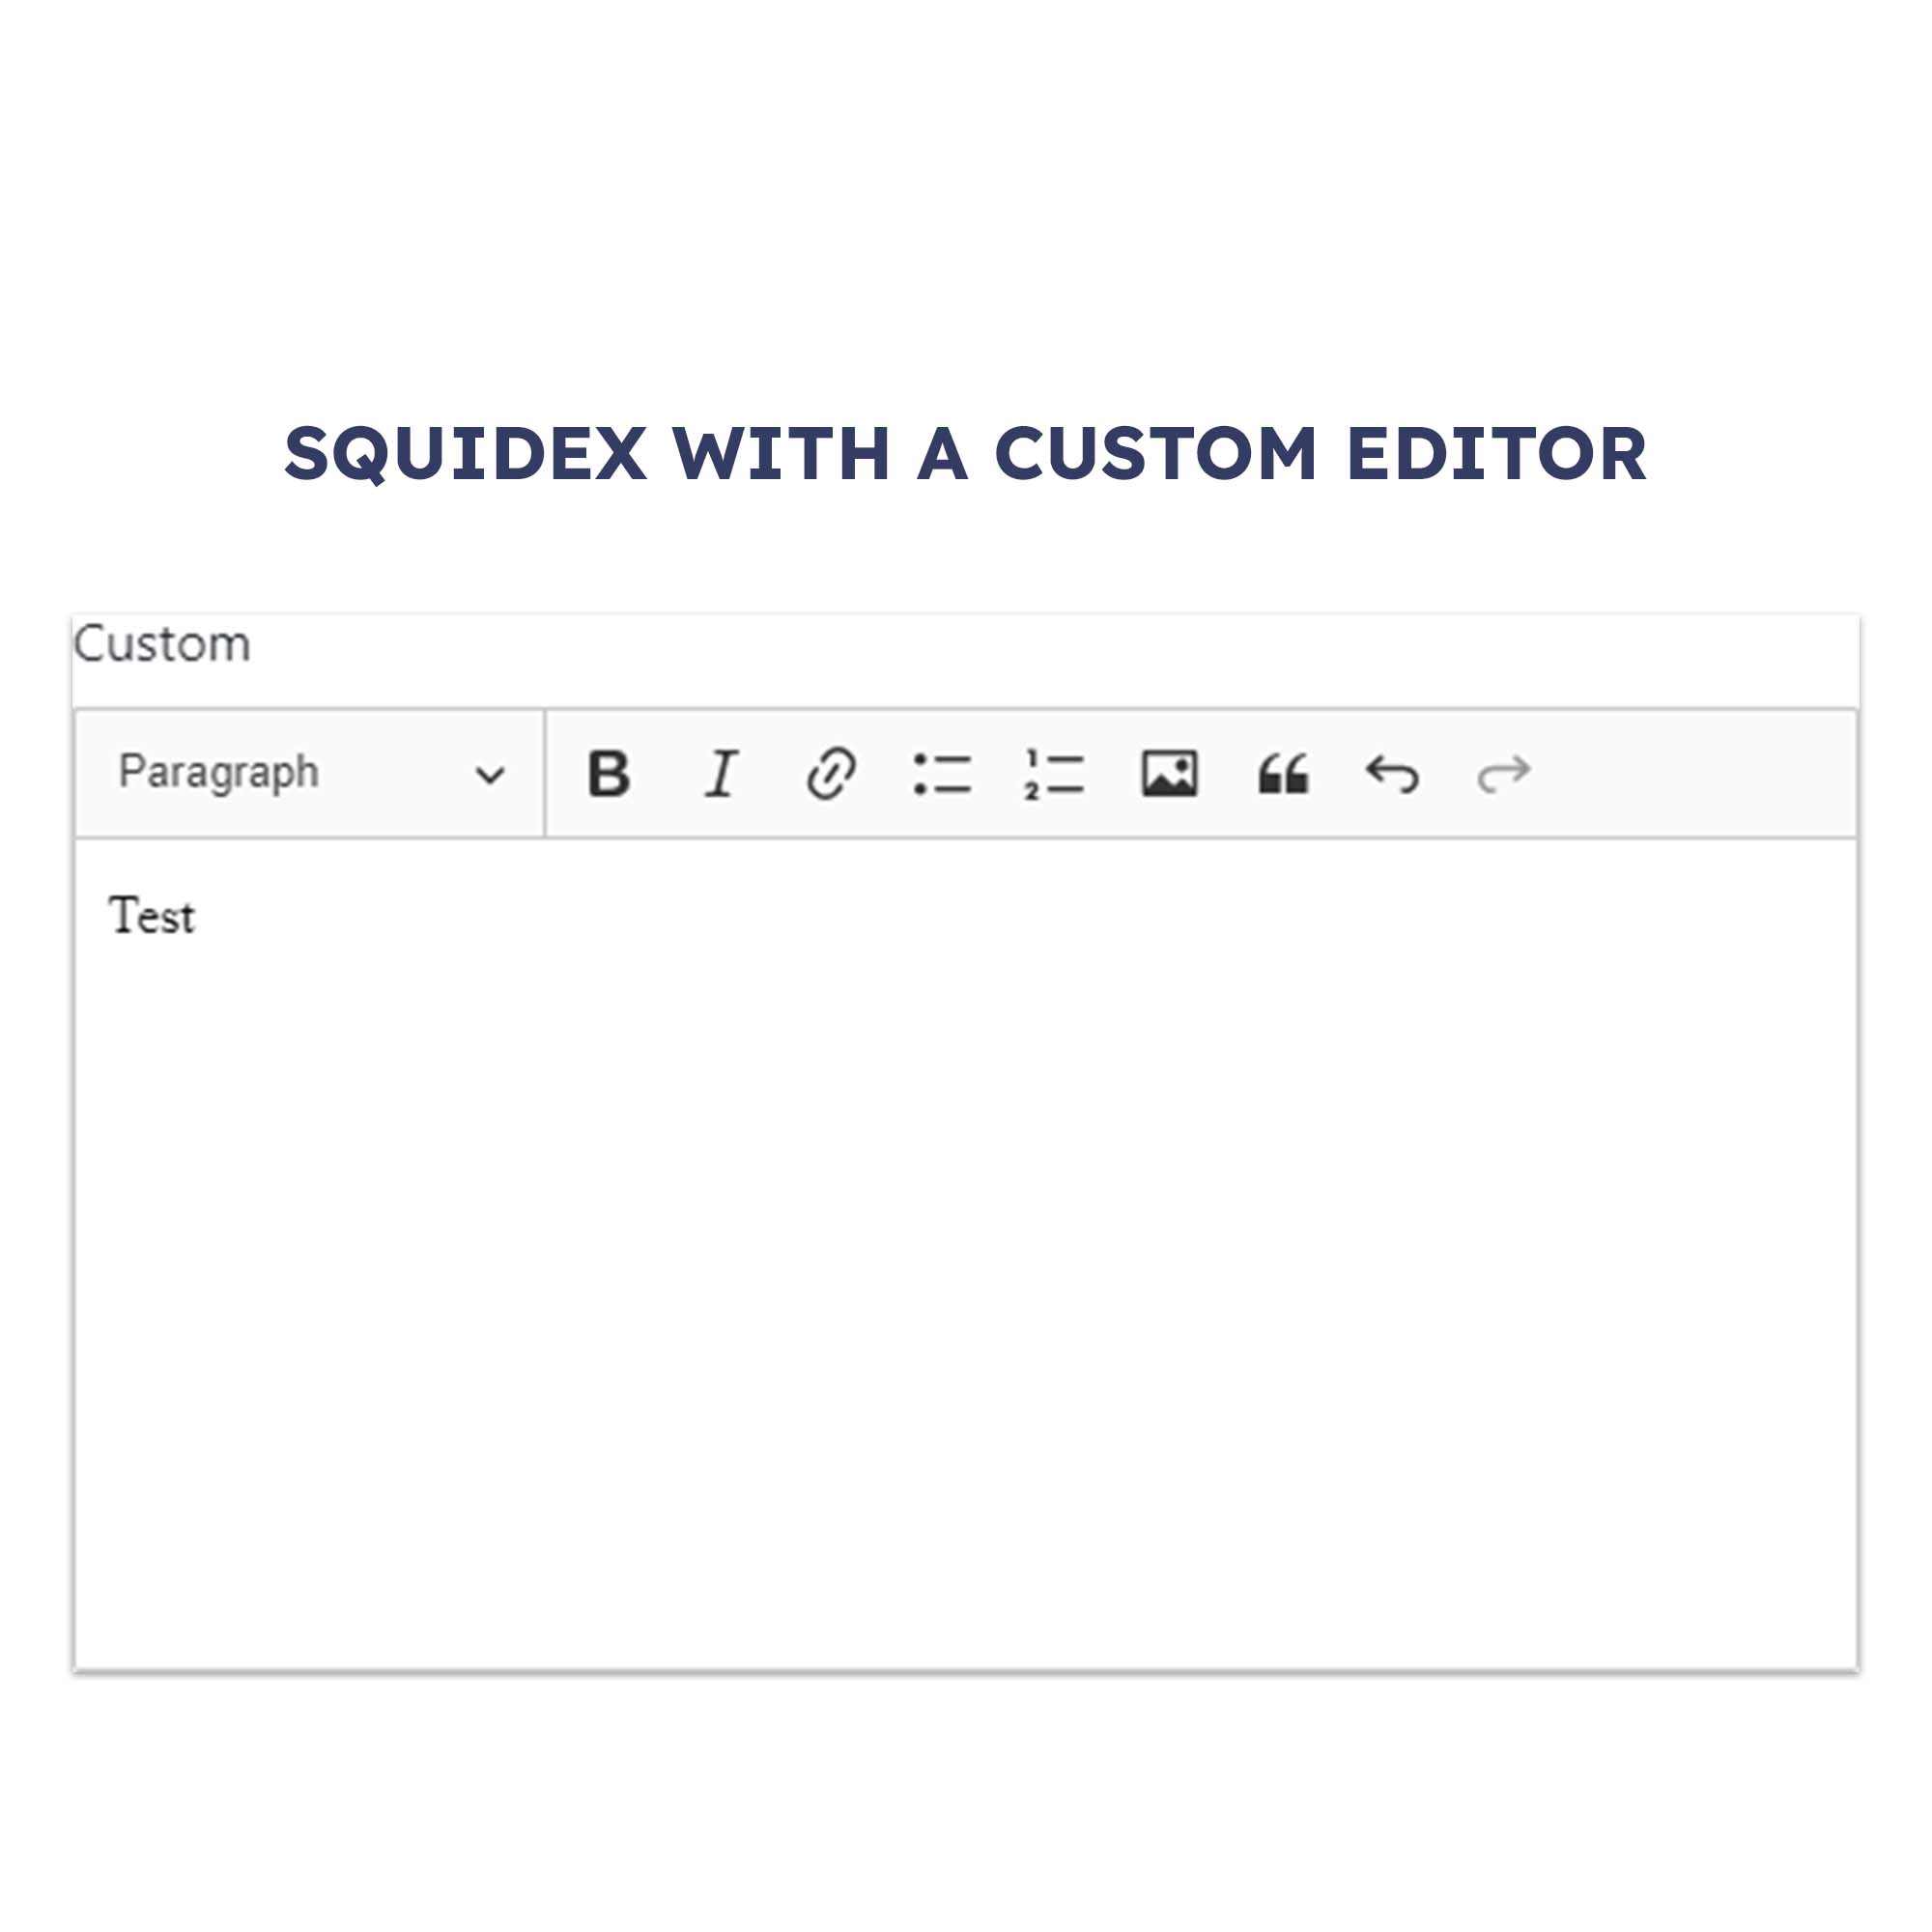 Custom Editors